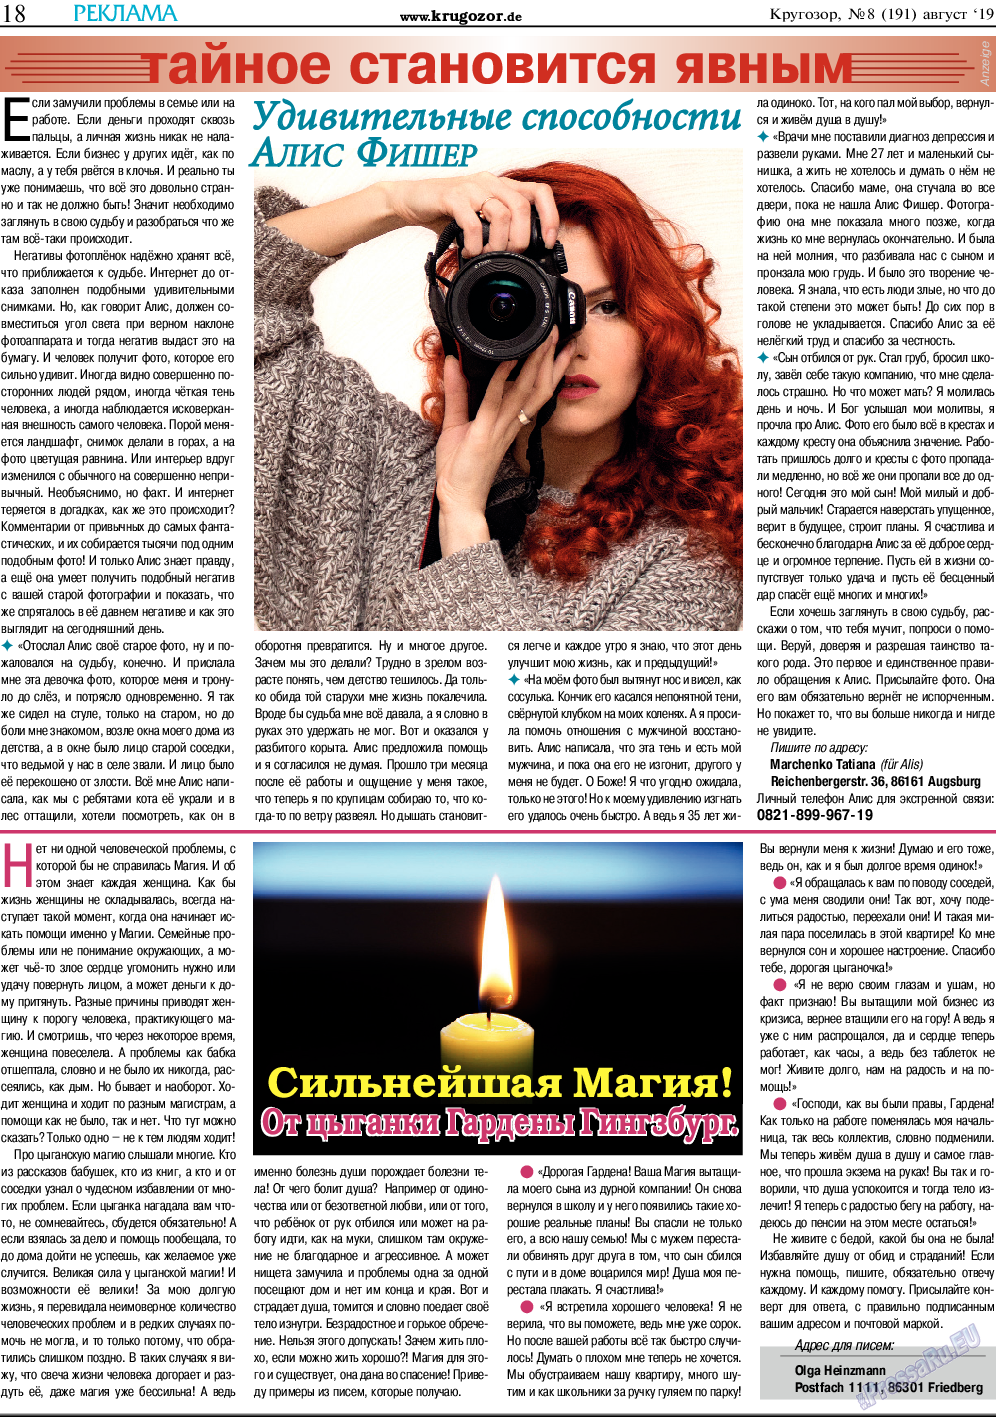 Кругозор, газета. 2019 №8 стр.18